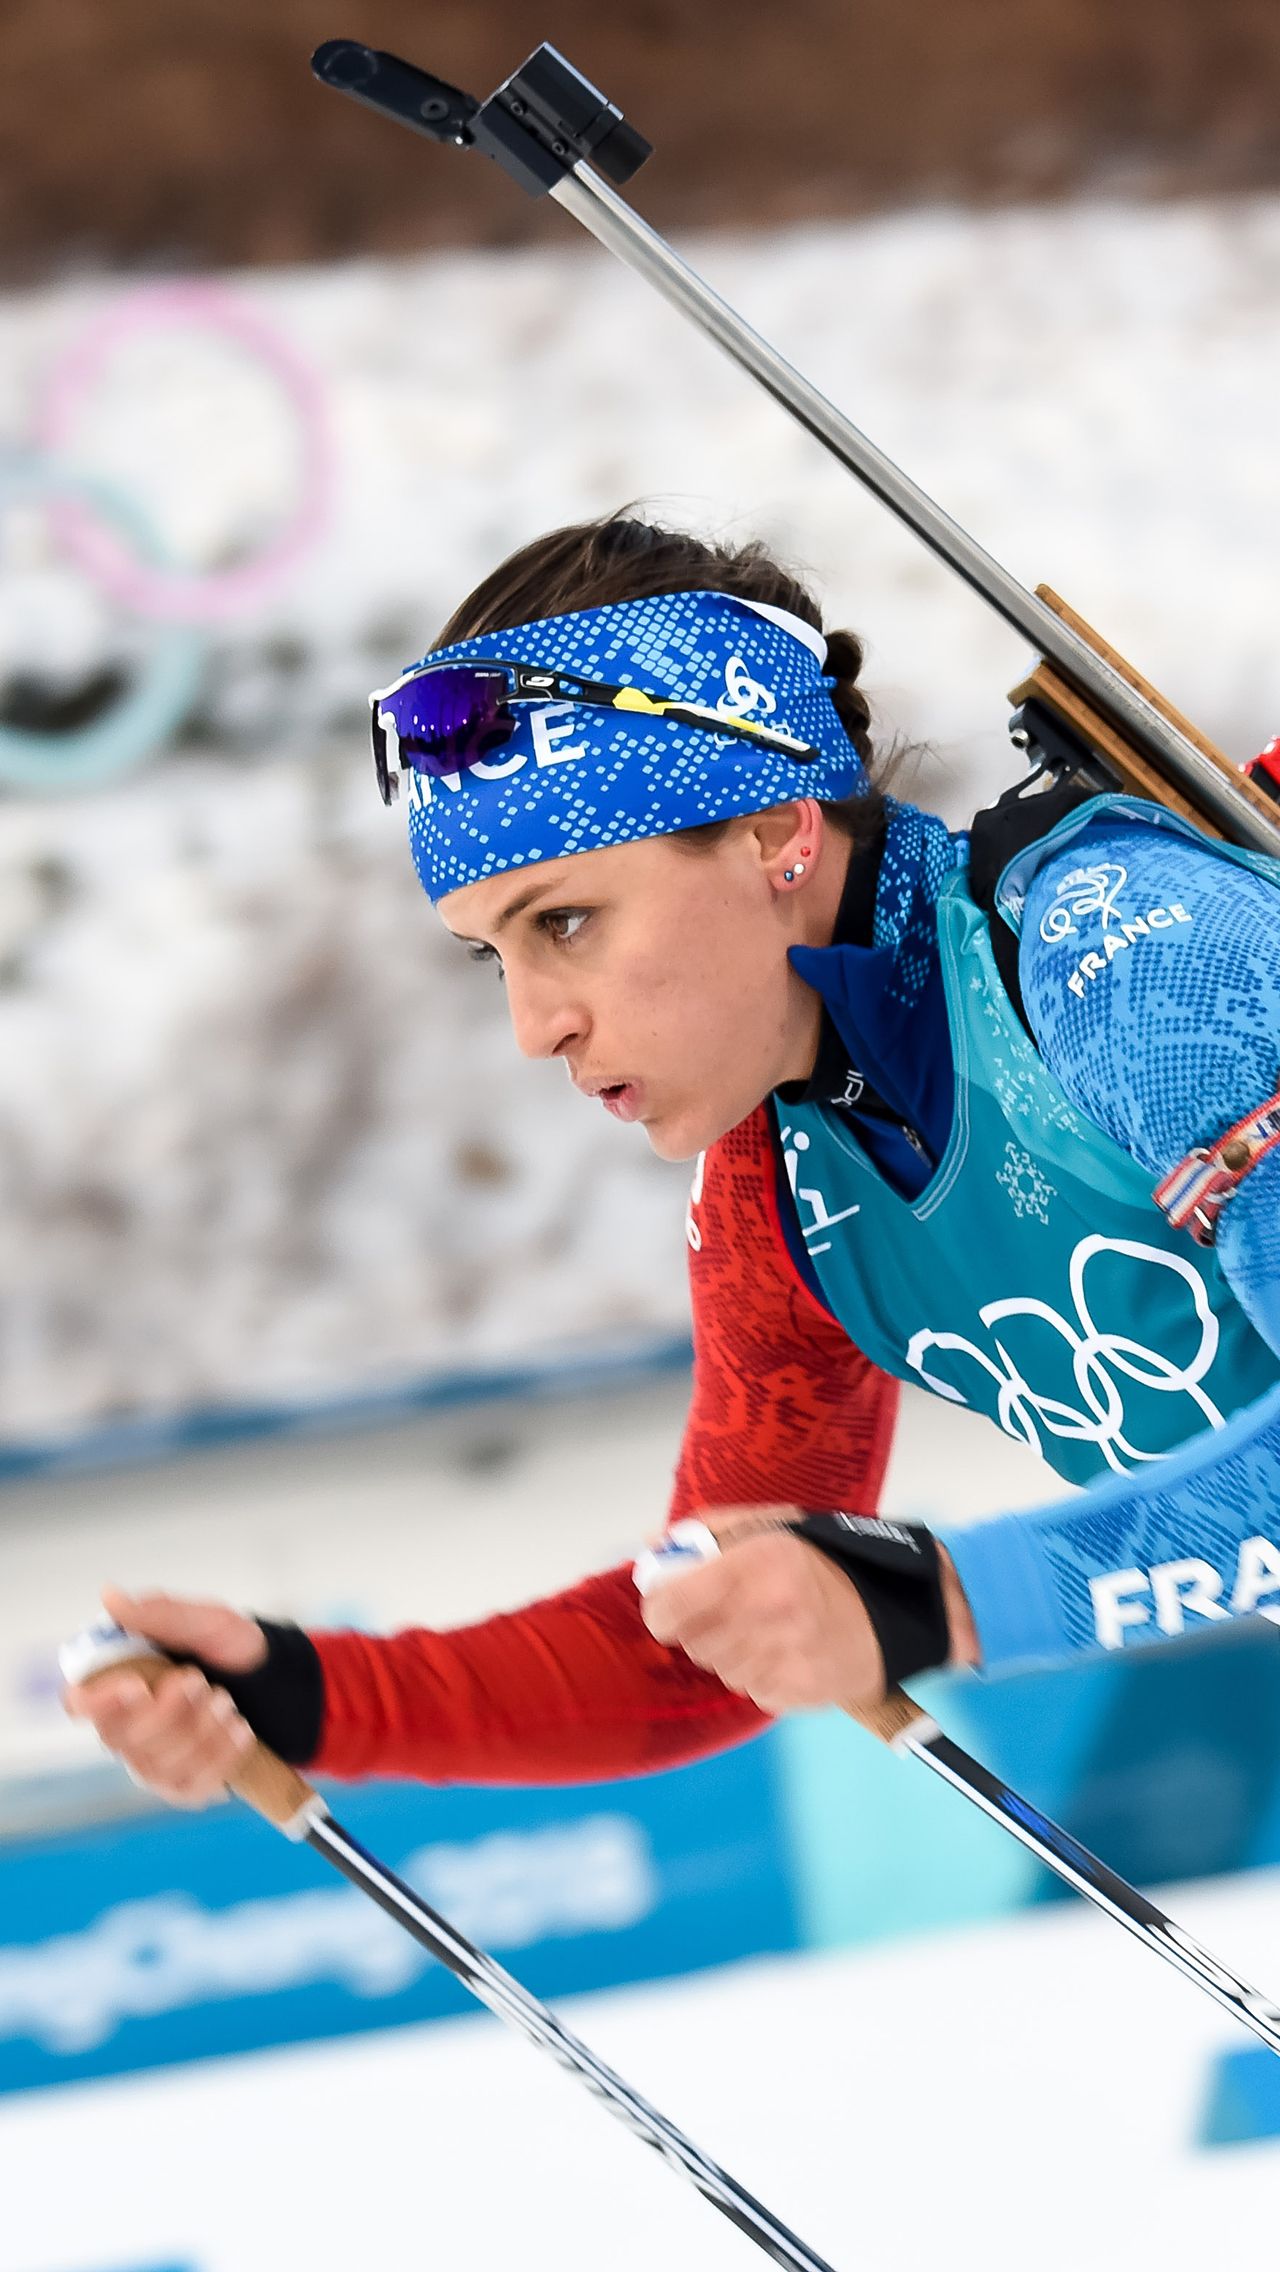 Призёр ЧМ по биатлону — 2017 и обладательница медалей Кубка мира Селия Эмонье на Олимпиаде-2014 представляла сборную Франции в лыжных гонках, а также выступала на лыжных ЧМ в 2013 и 2015 году.